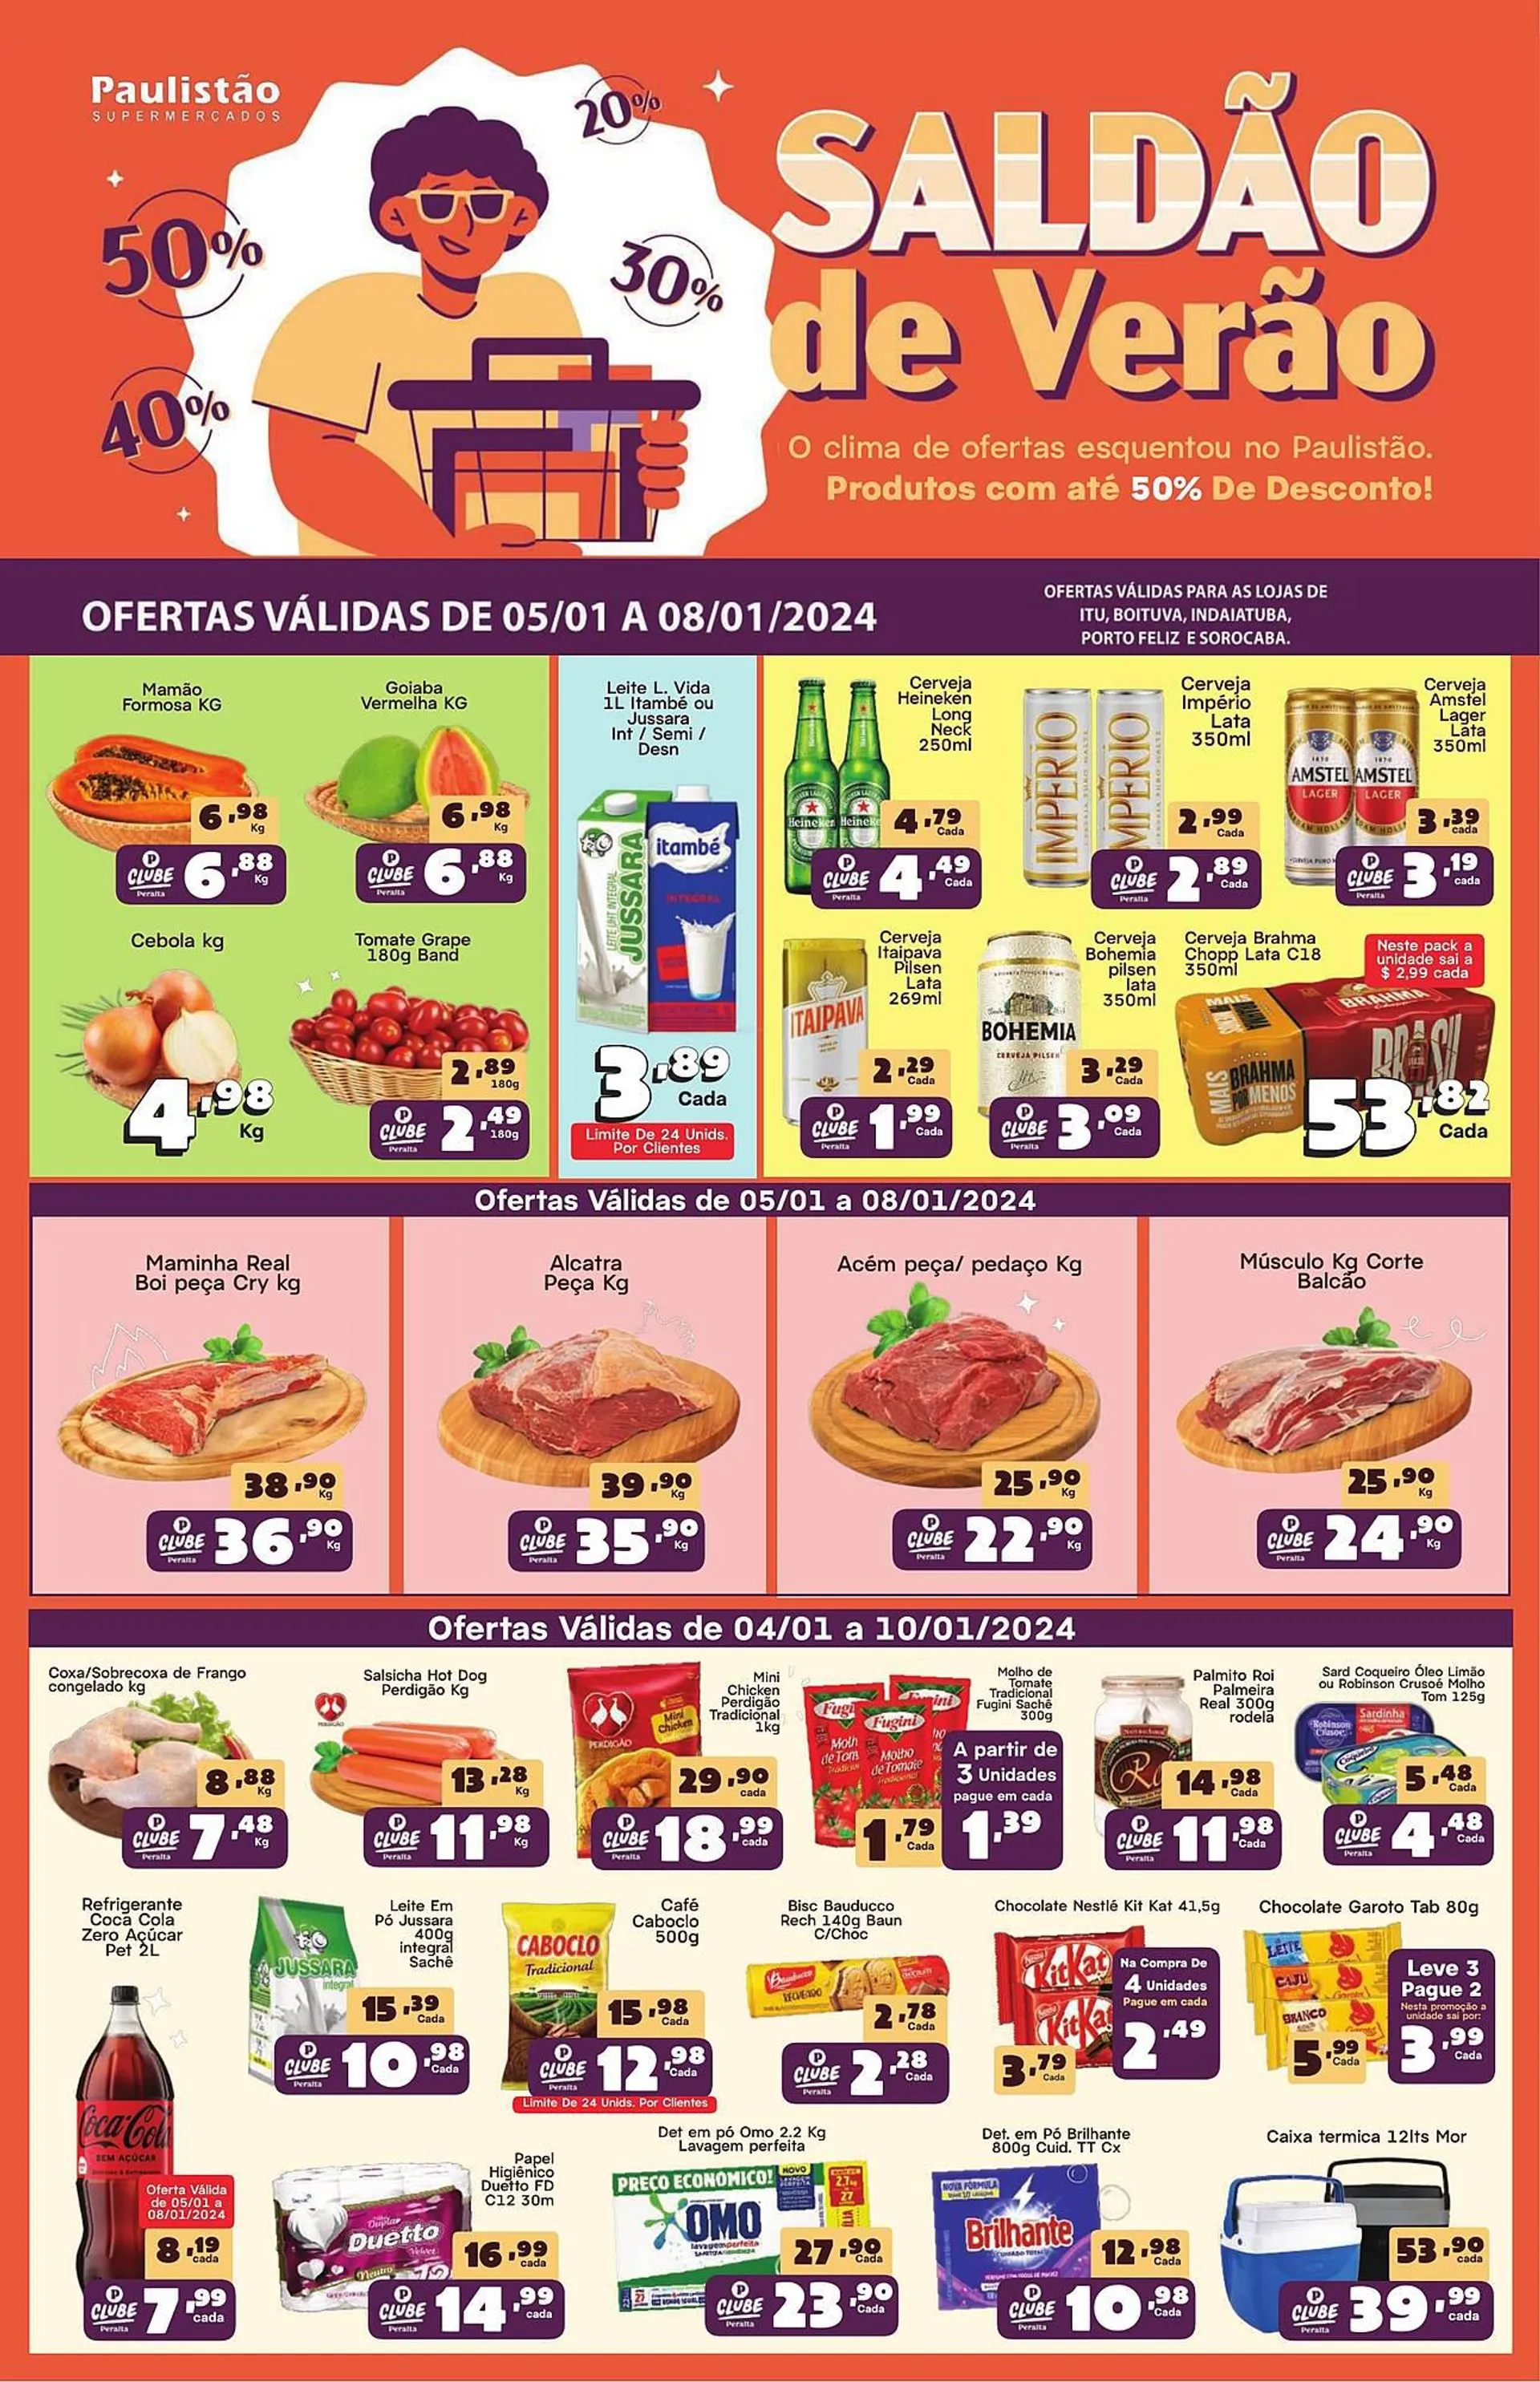 Encarte de Catálogo Paulistão Supermercados 9 de janeiro até 10 de janeiro 2024 - Pagina 1